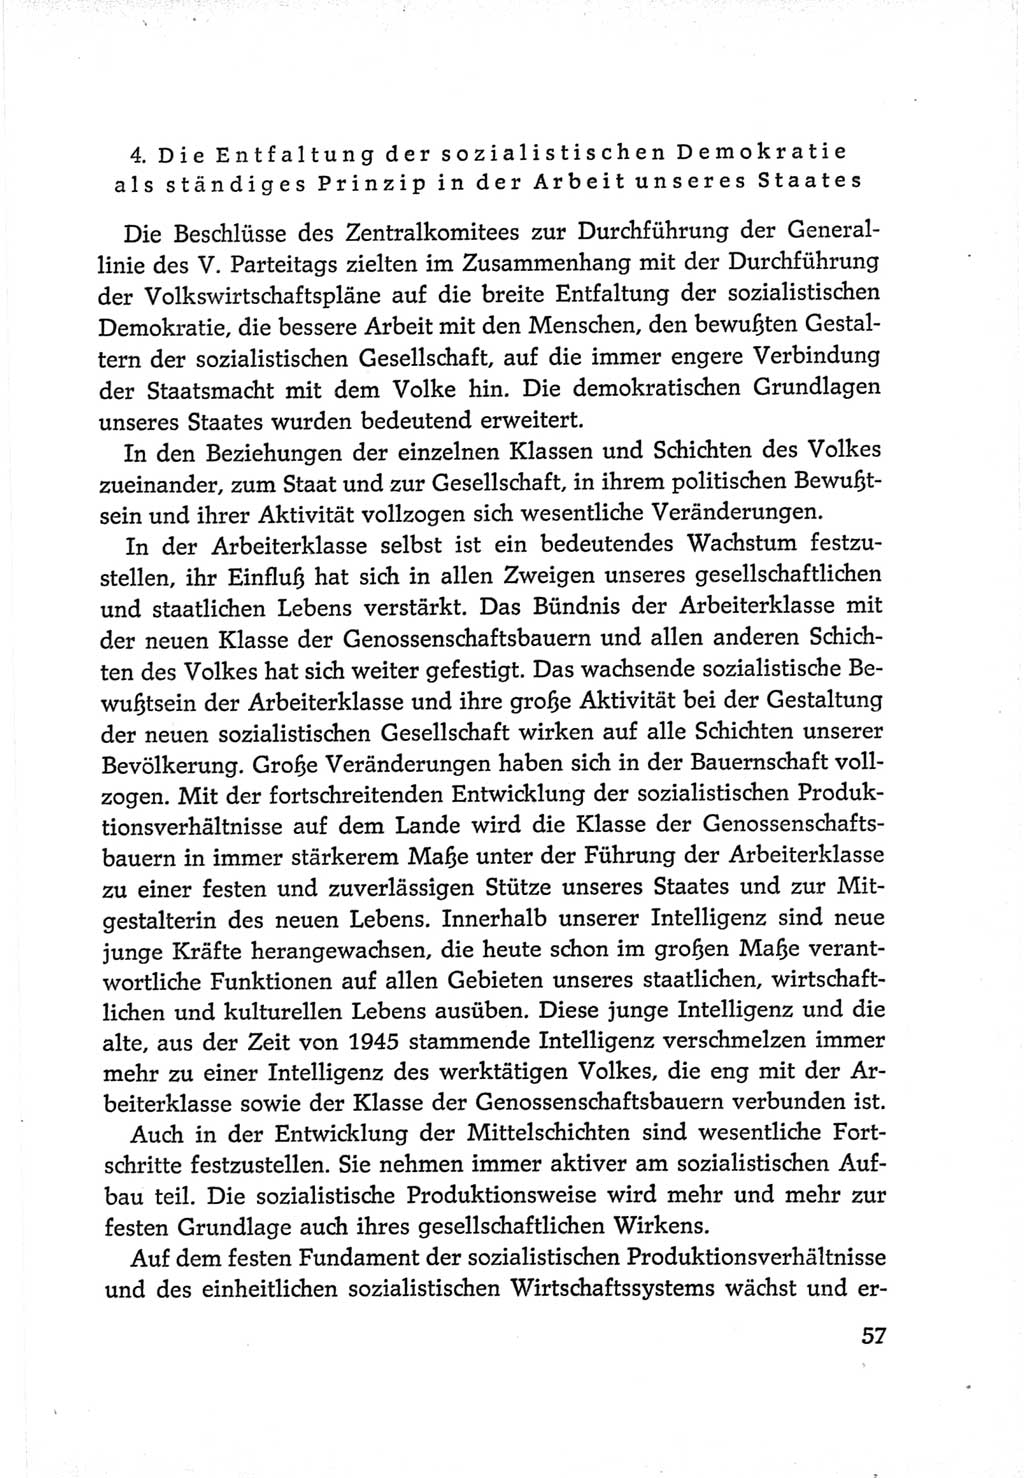 Protokoll der Verhandlungen des Ⅵ. Parteitages der Sozialistischen Einheitspartei Deutschlands (SED) [Deutsche Demokratische Republik (DDR)] 1963, Band Ⅳ, Seite 57 (Prot. Verh. Ⅵ. PT SED DDR 1963, Bd. Ⅳ, S. 57)